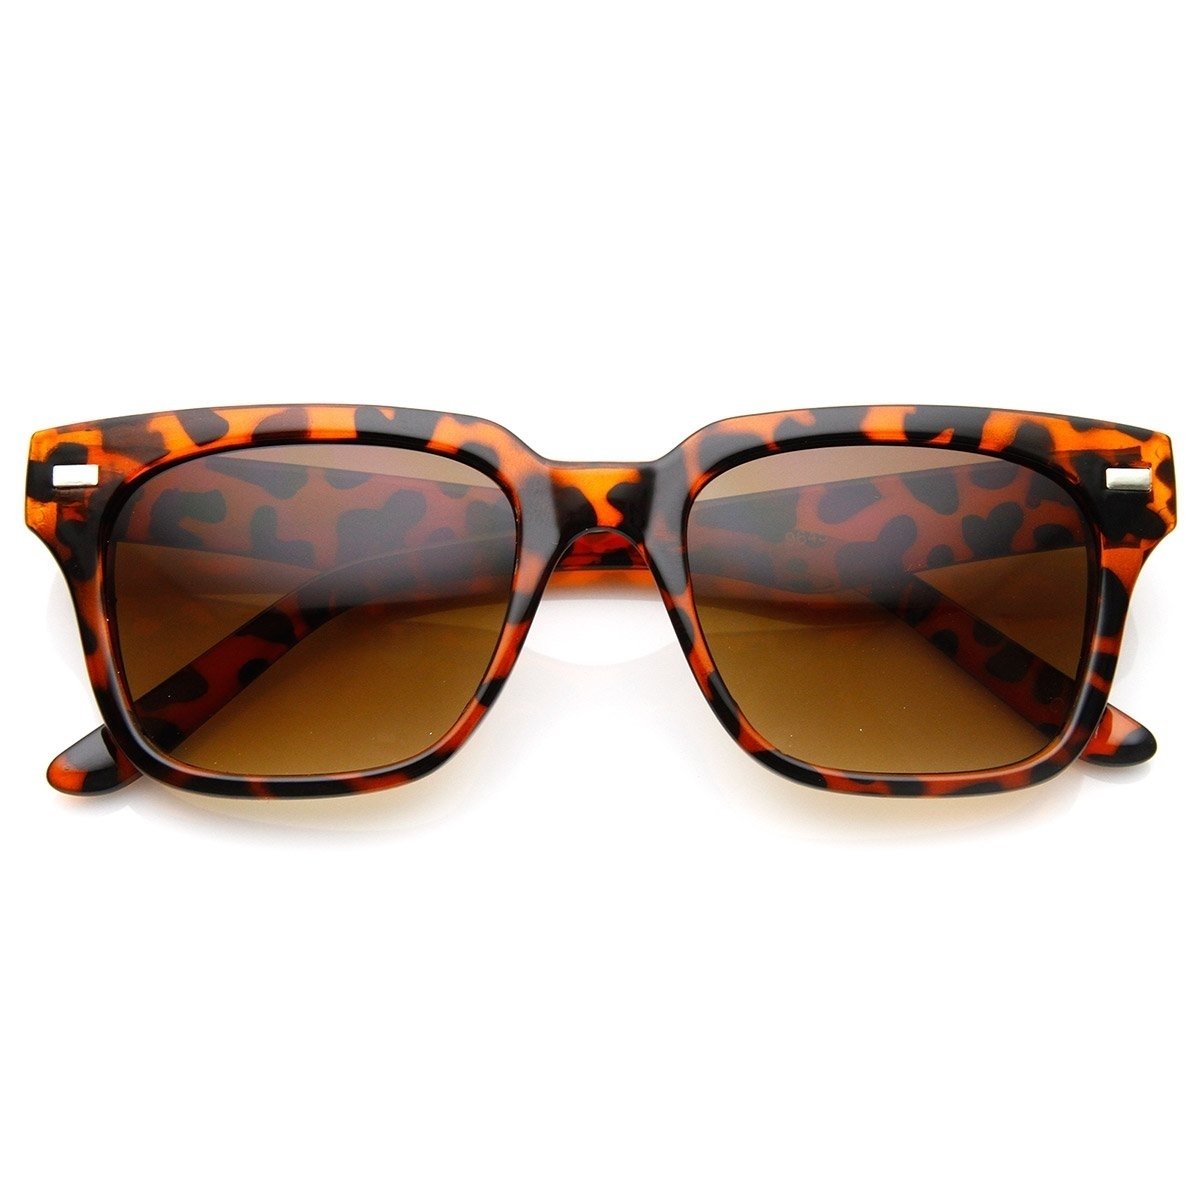 Casual Horned Rim Square Frame Retro Horn Rimmed Sunglasses - Matte-Tortoise Green